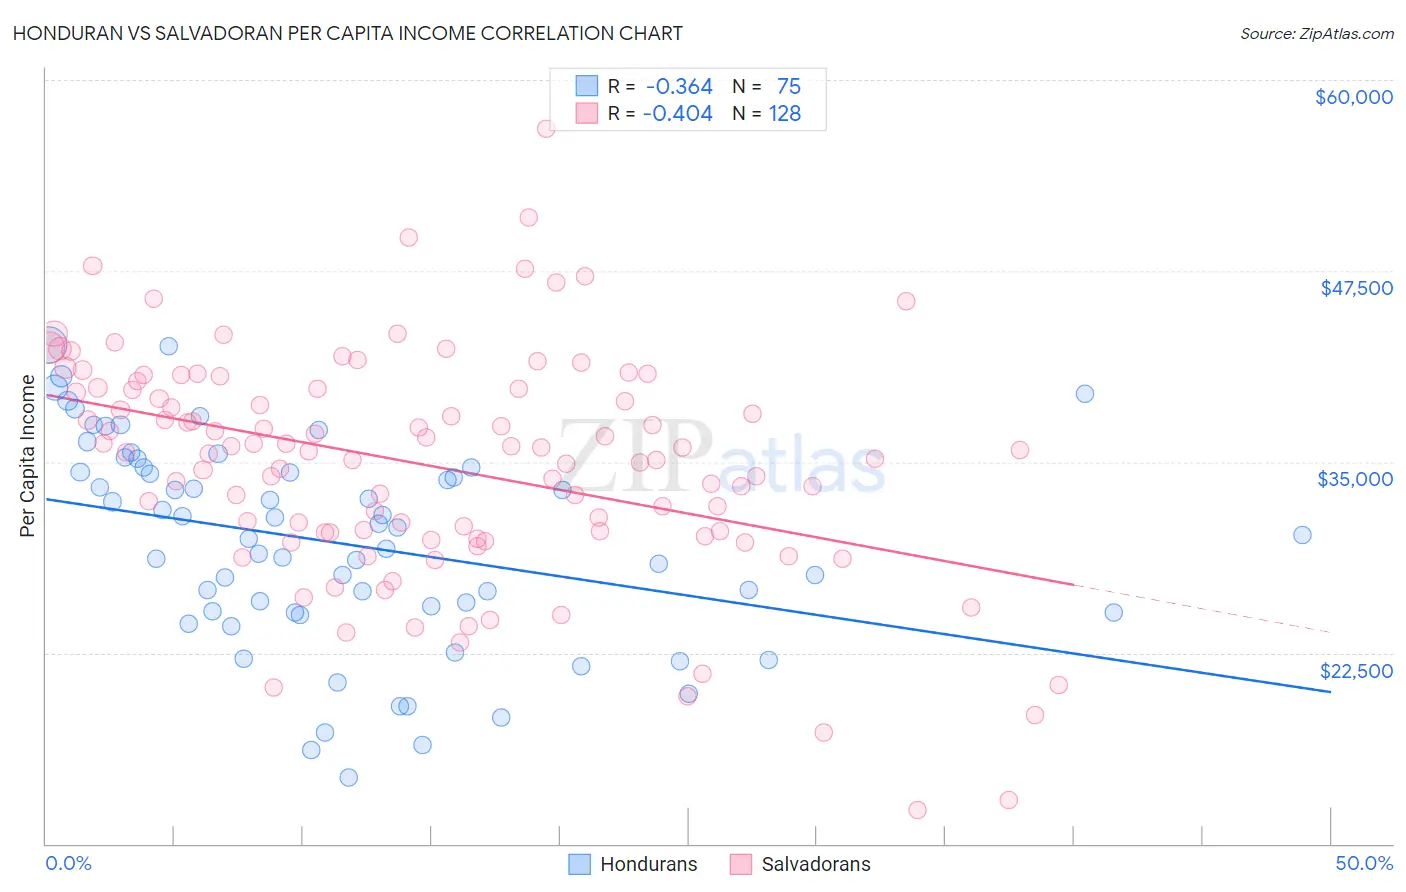 Honduran vs Salvadoran Per Capita Income